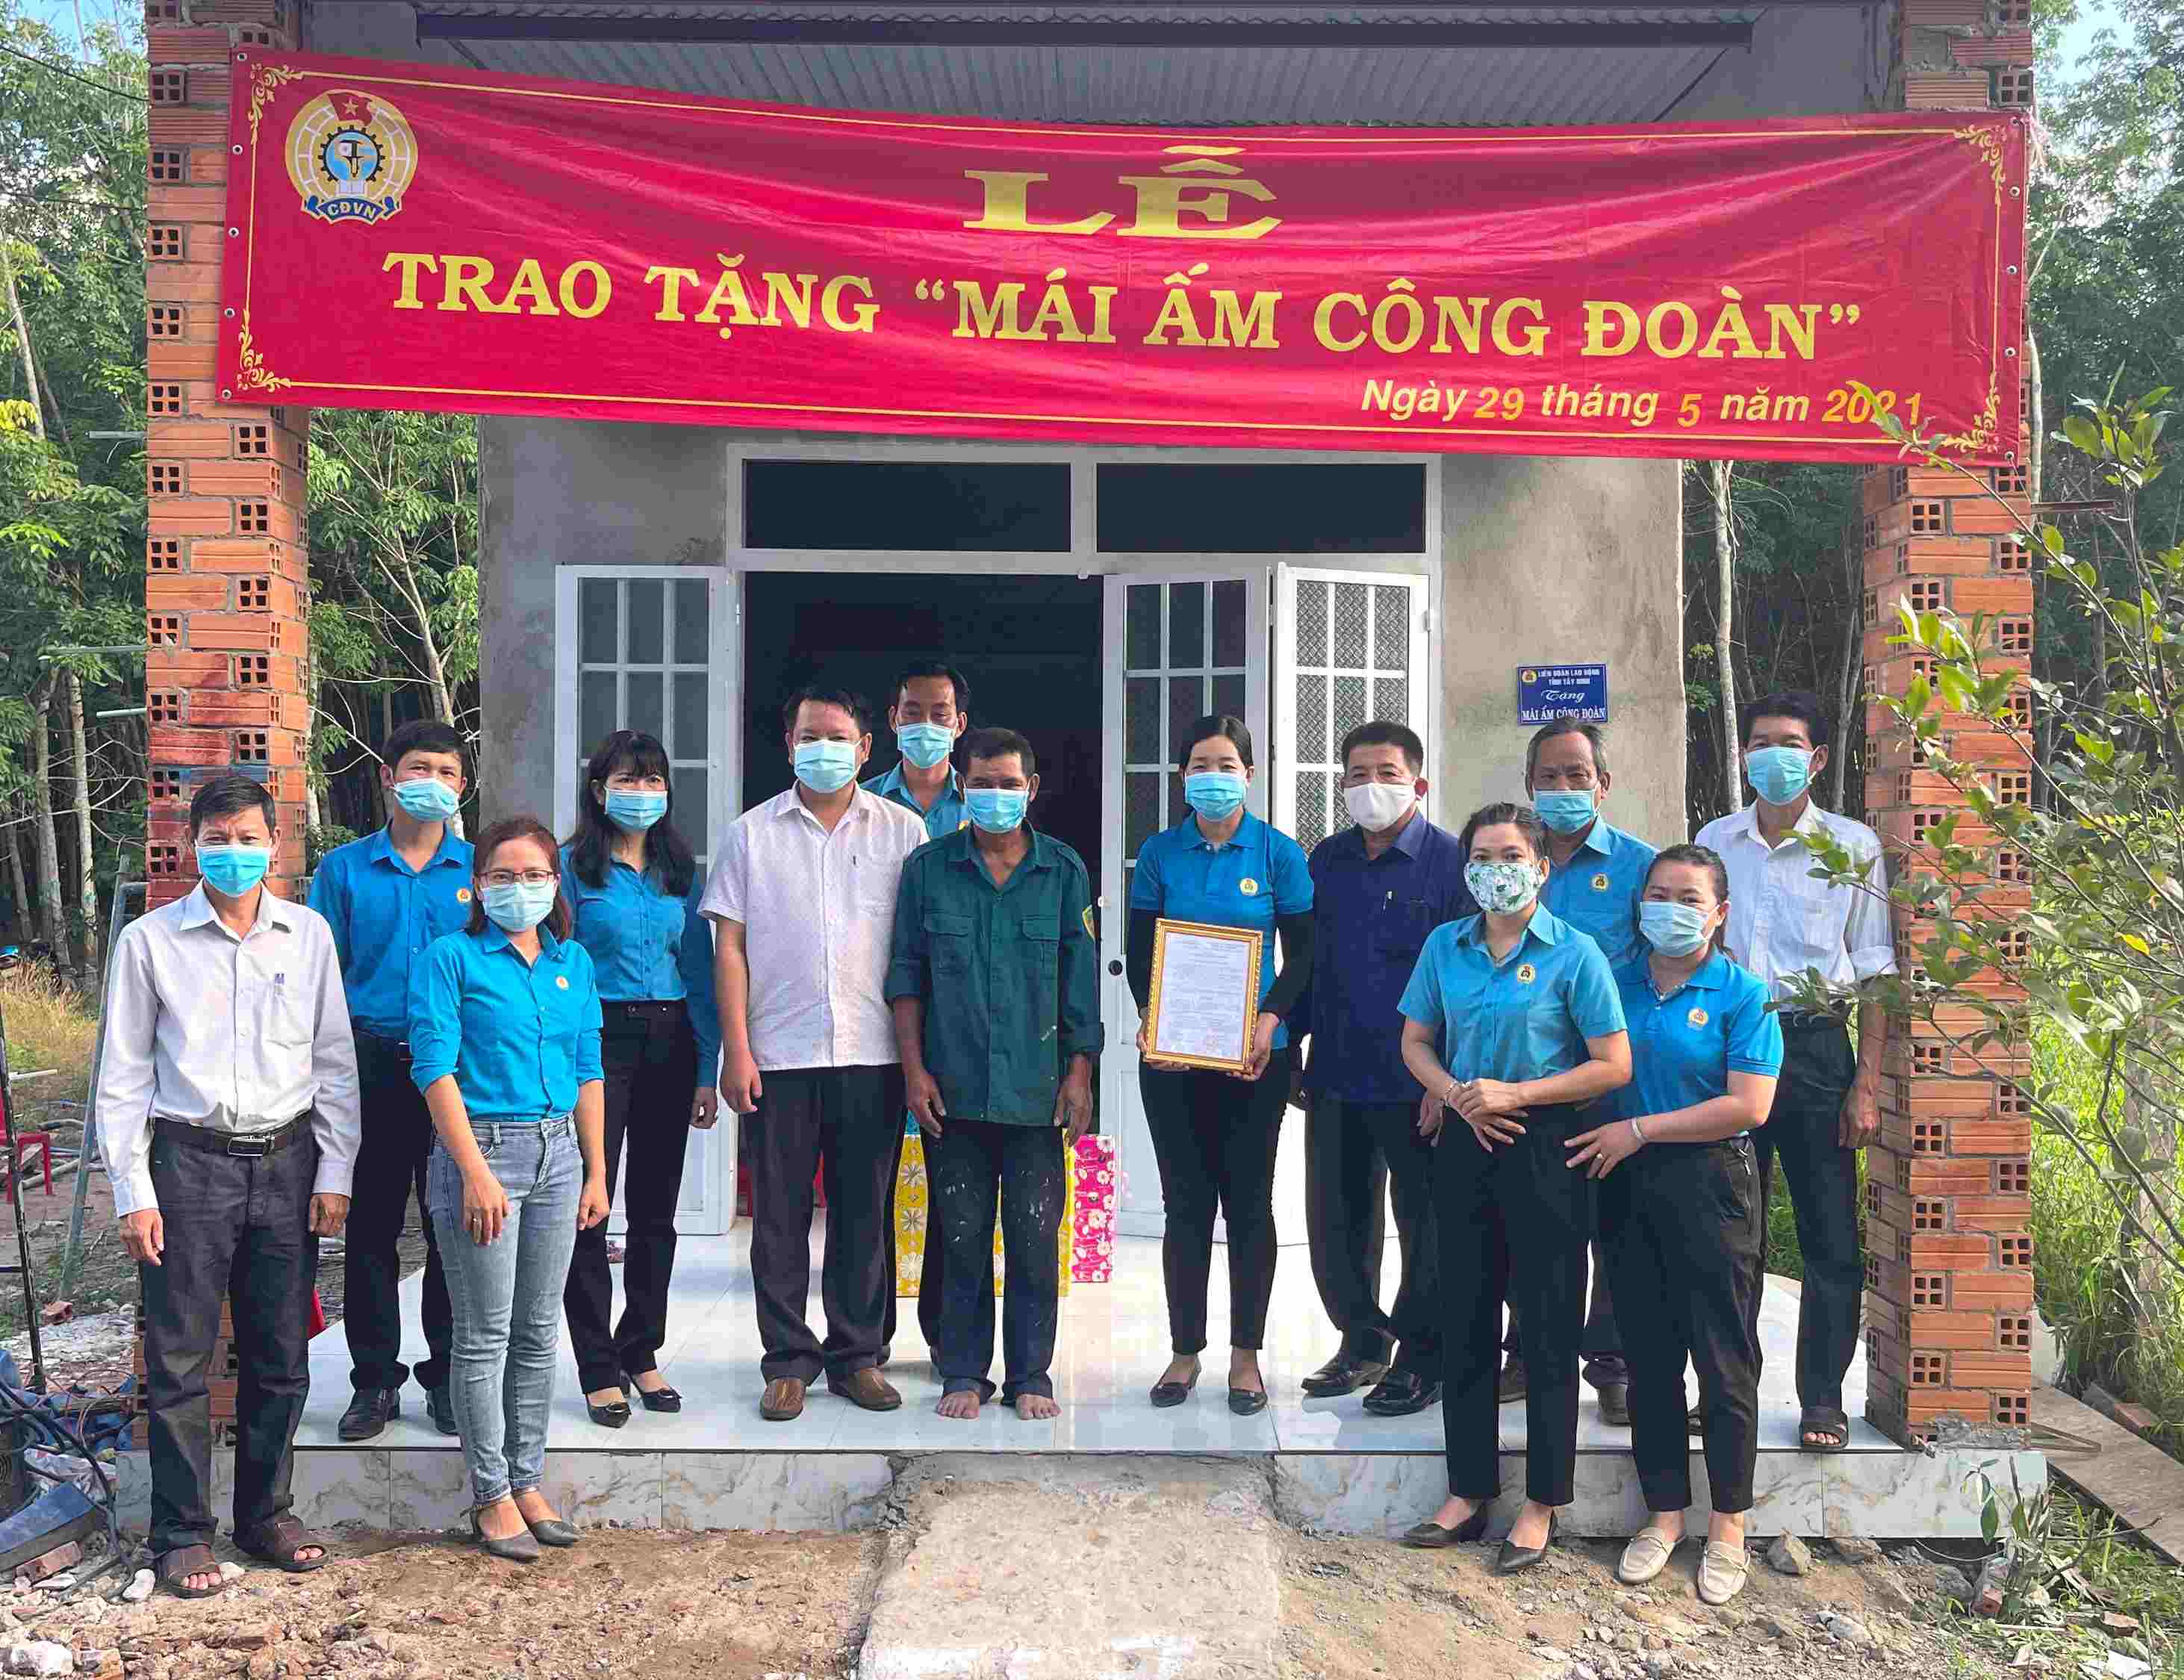 Công đoàn Khu kinh tế tỉnh Tây Ninh Trao nhà mái ấm công đoàn tại huyện Dương Minh Châu